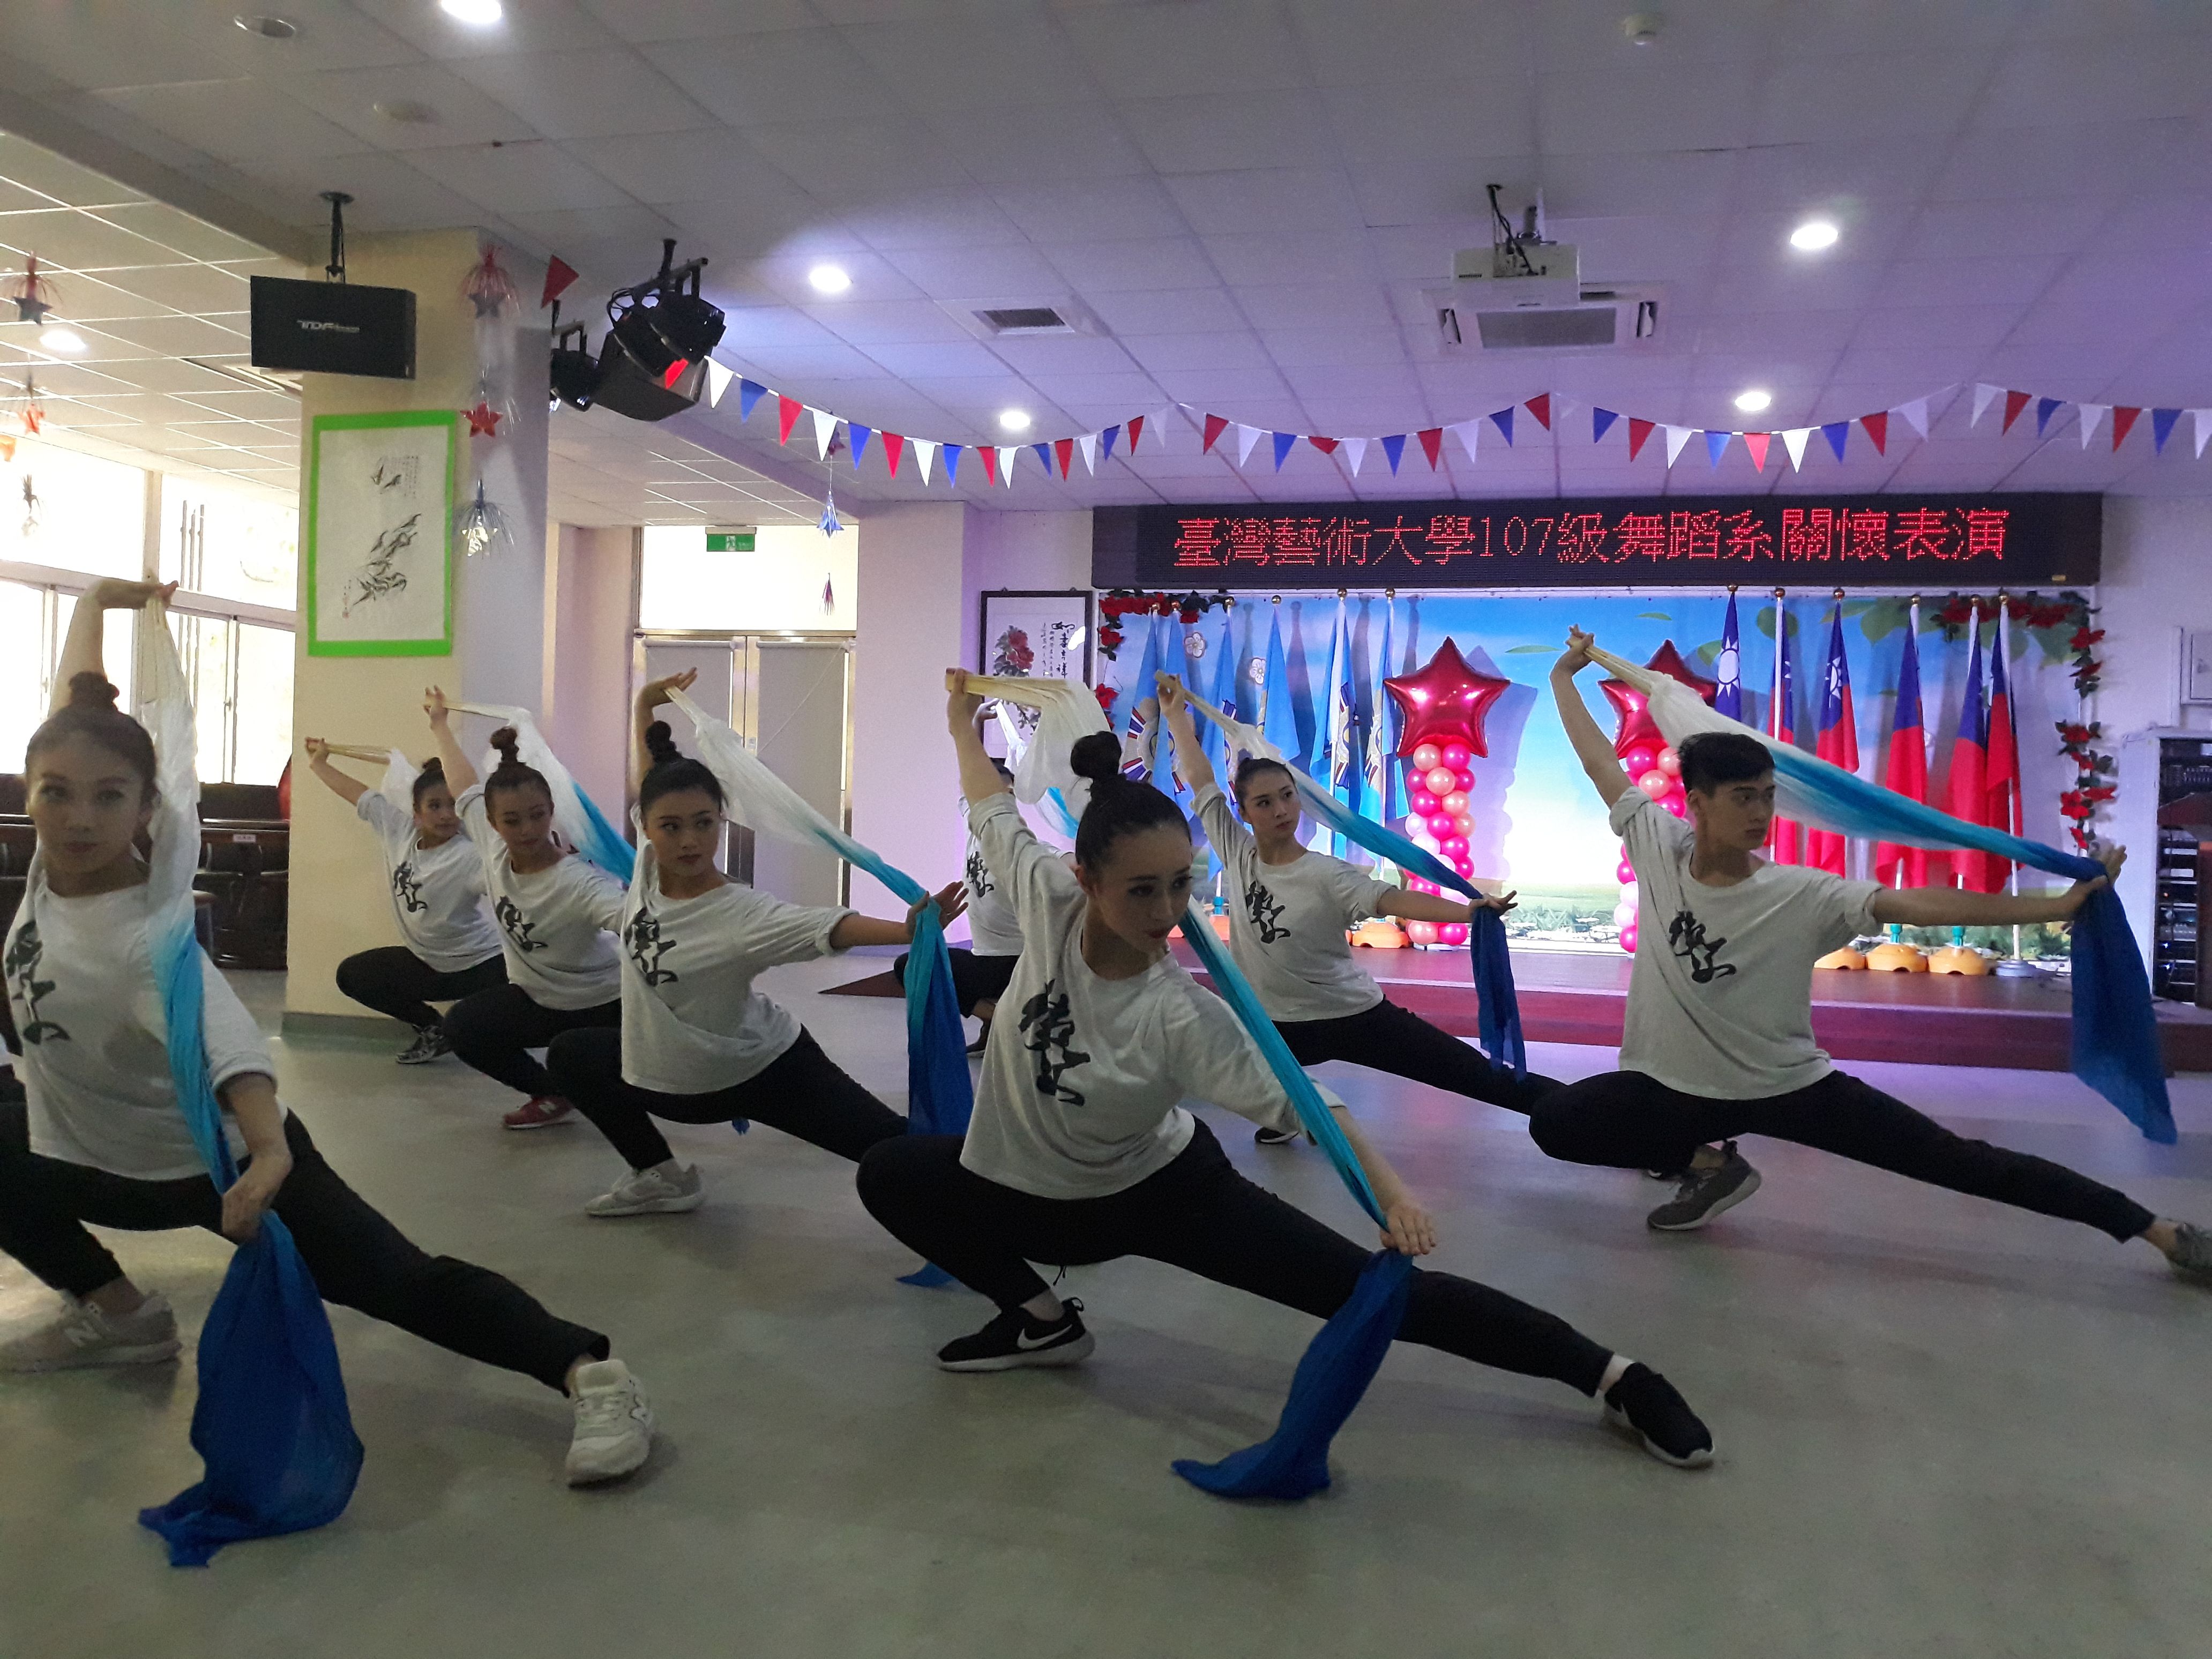 臺灣藝術大學107級舞蹈系服務學習表演11